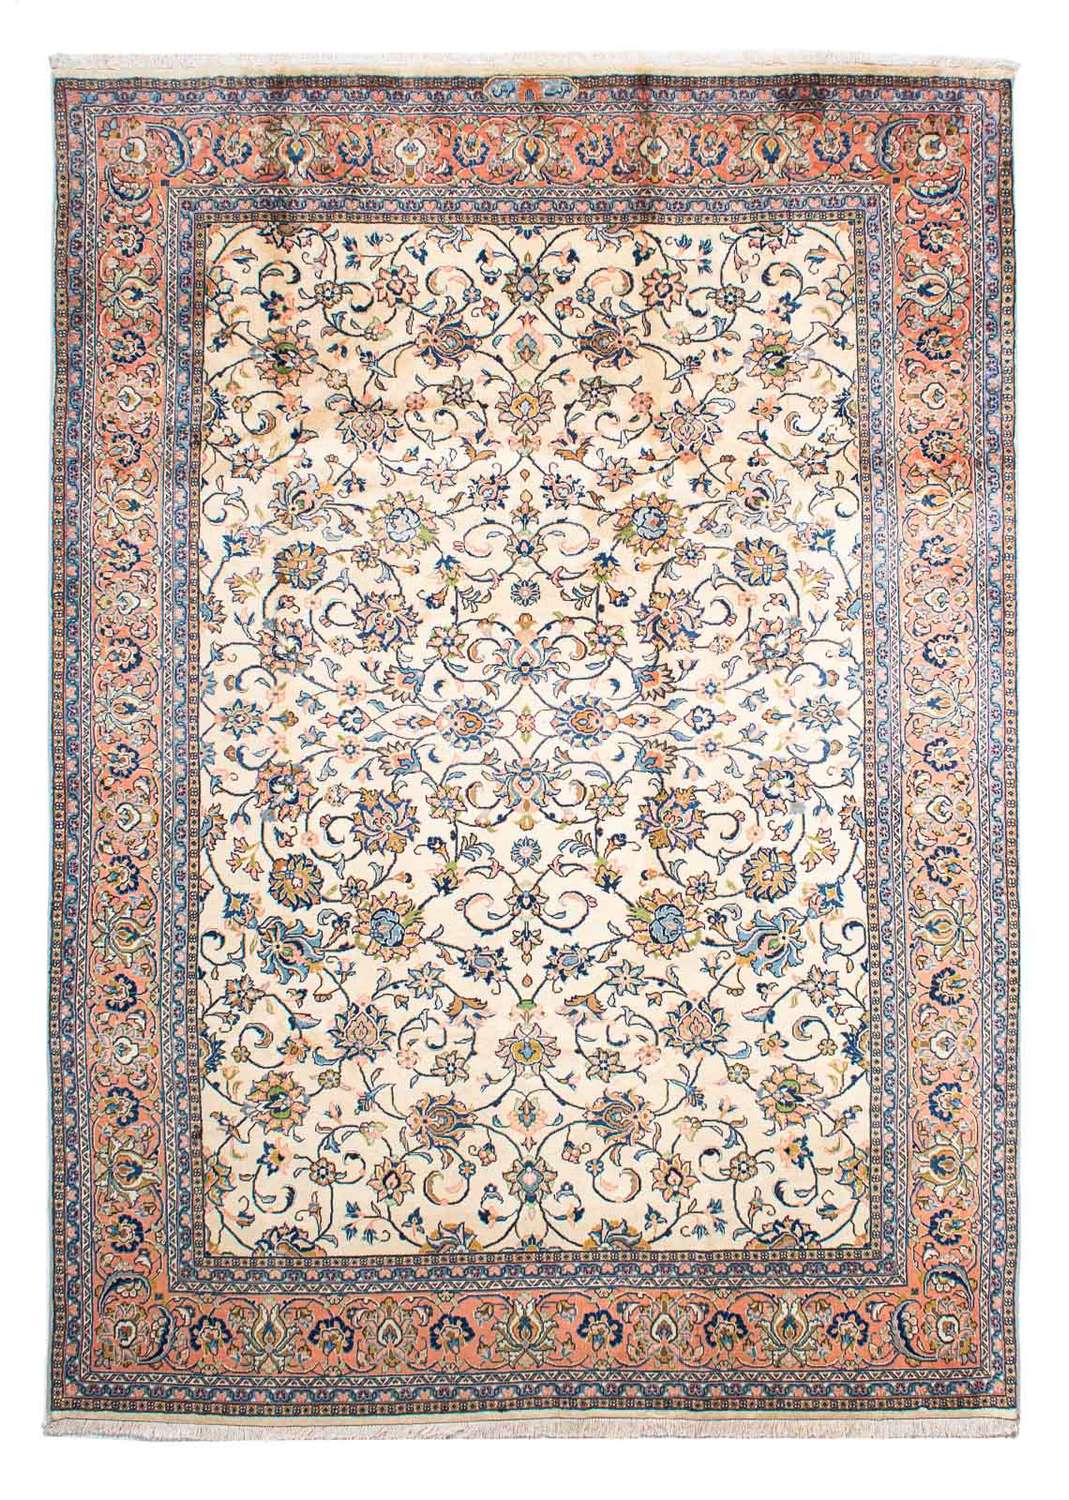 Persisk teppe - klassisk - 281 x 207 cm - beige